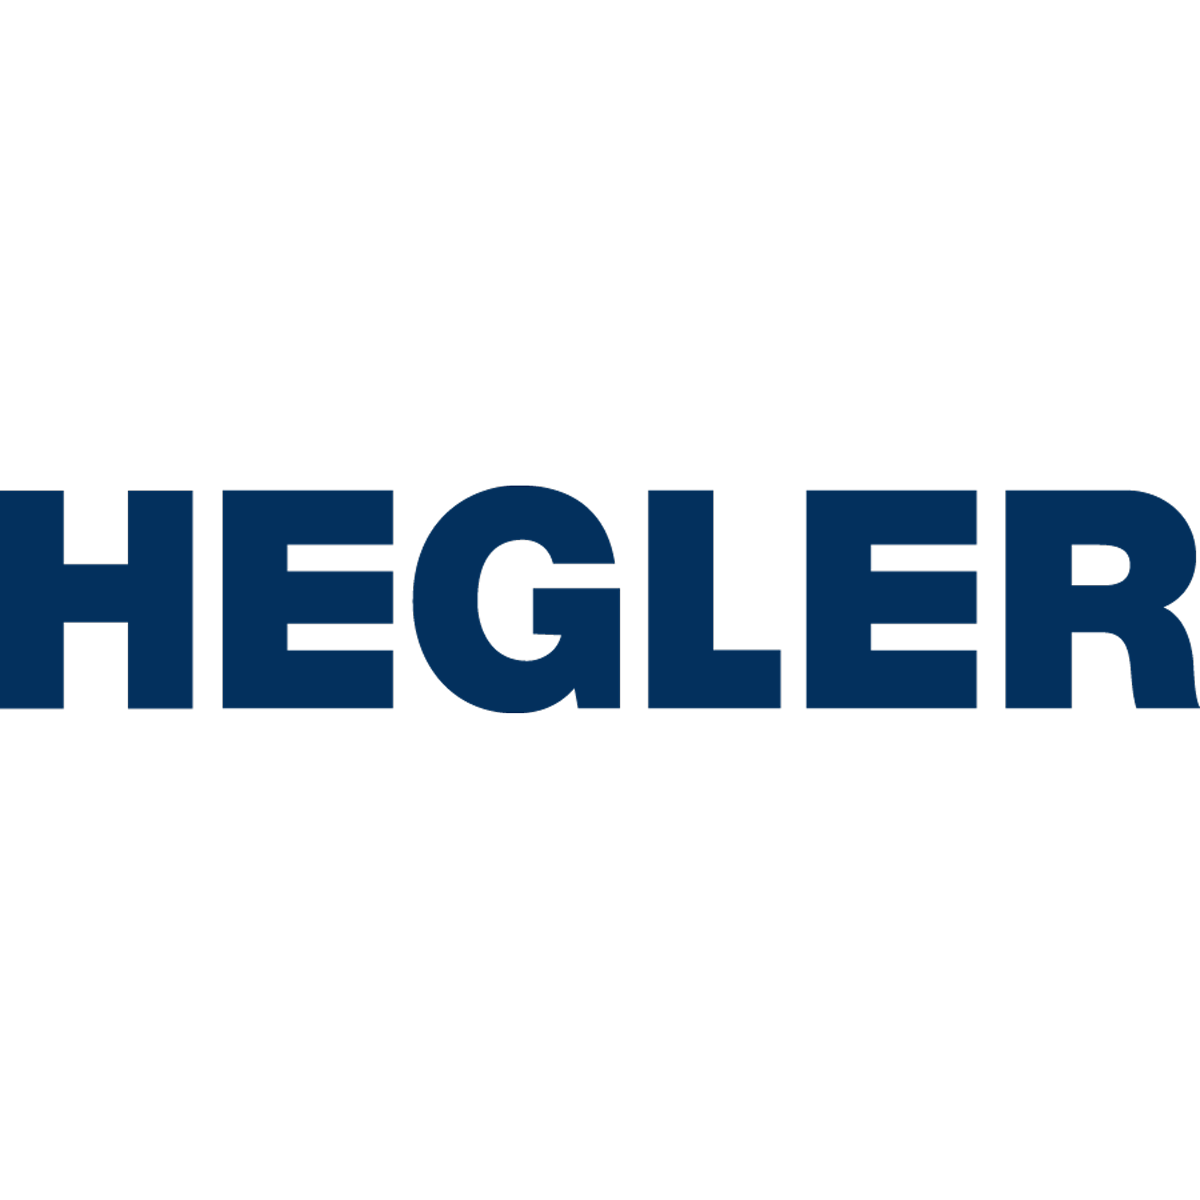 Hegler Plastik GmbH